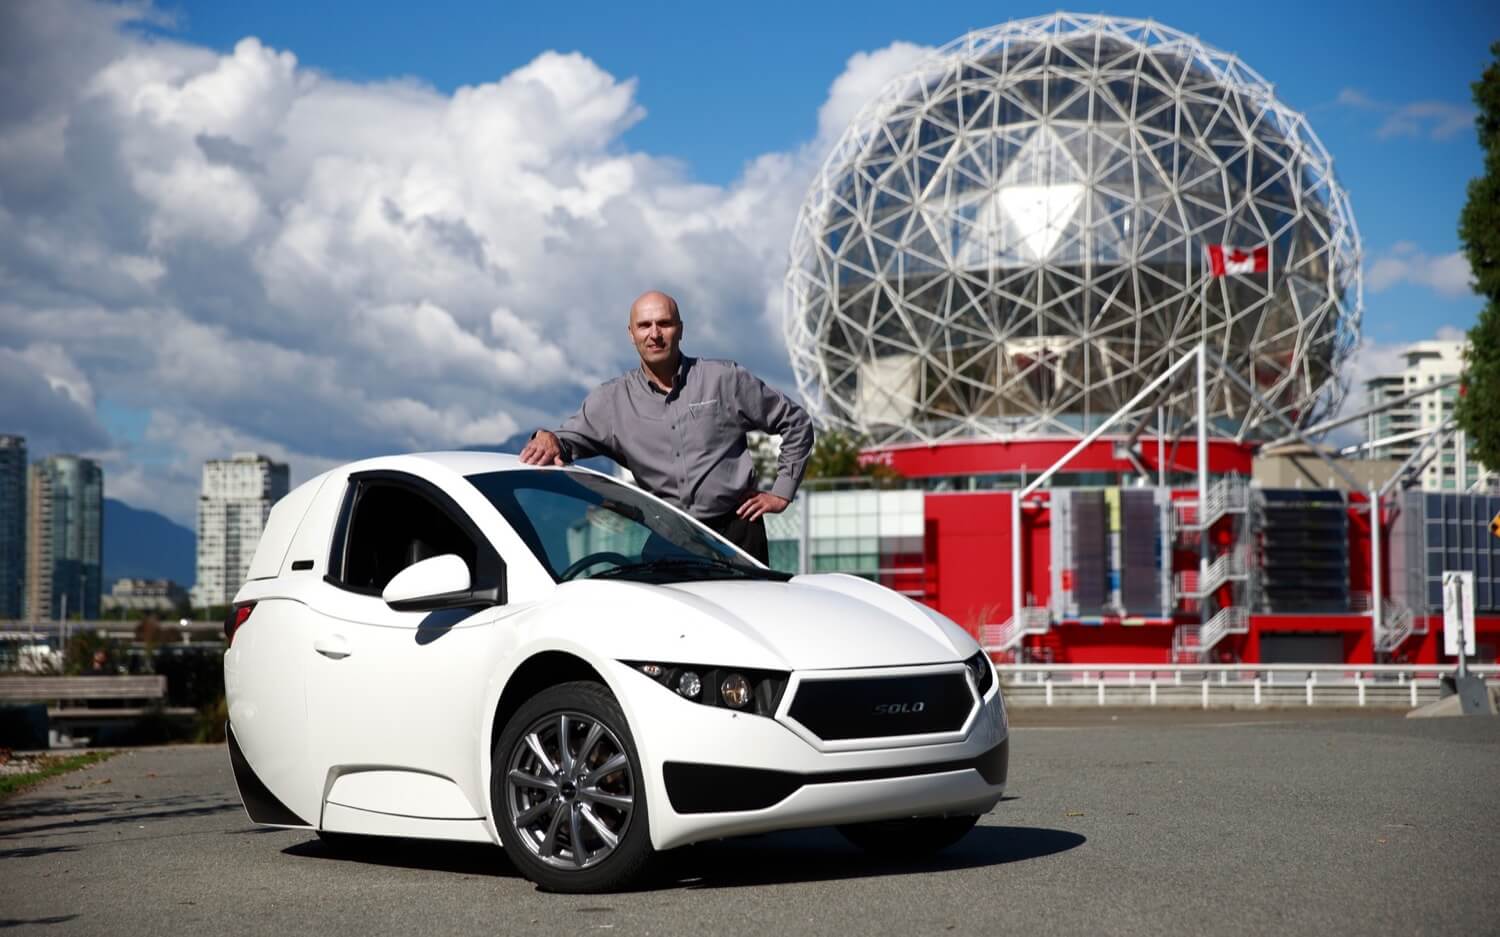 Tre-hjuls elektrisk bil fra Canada sjokkerende sine første eiere